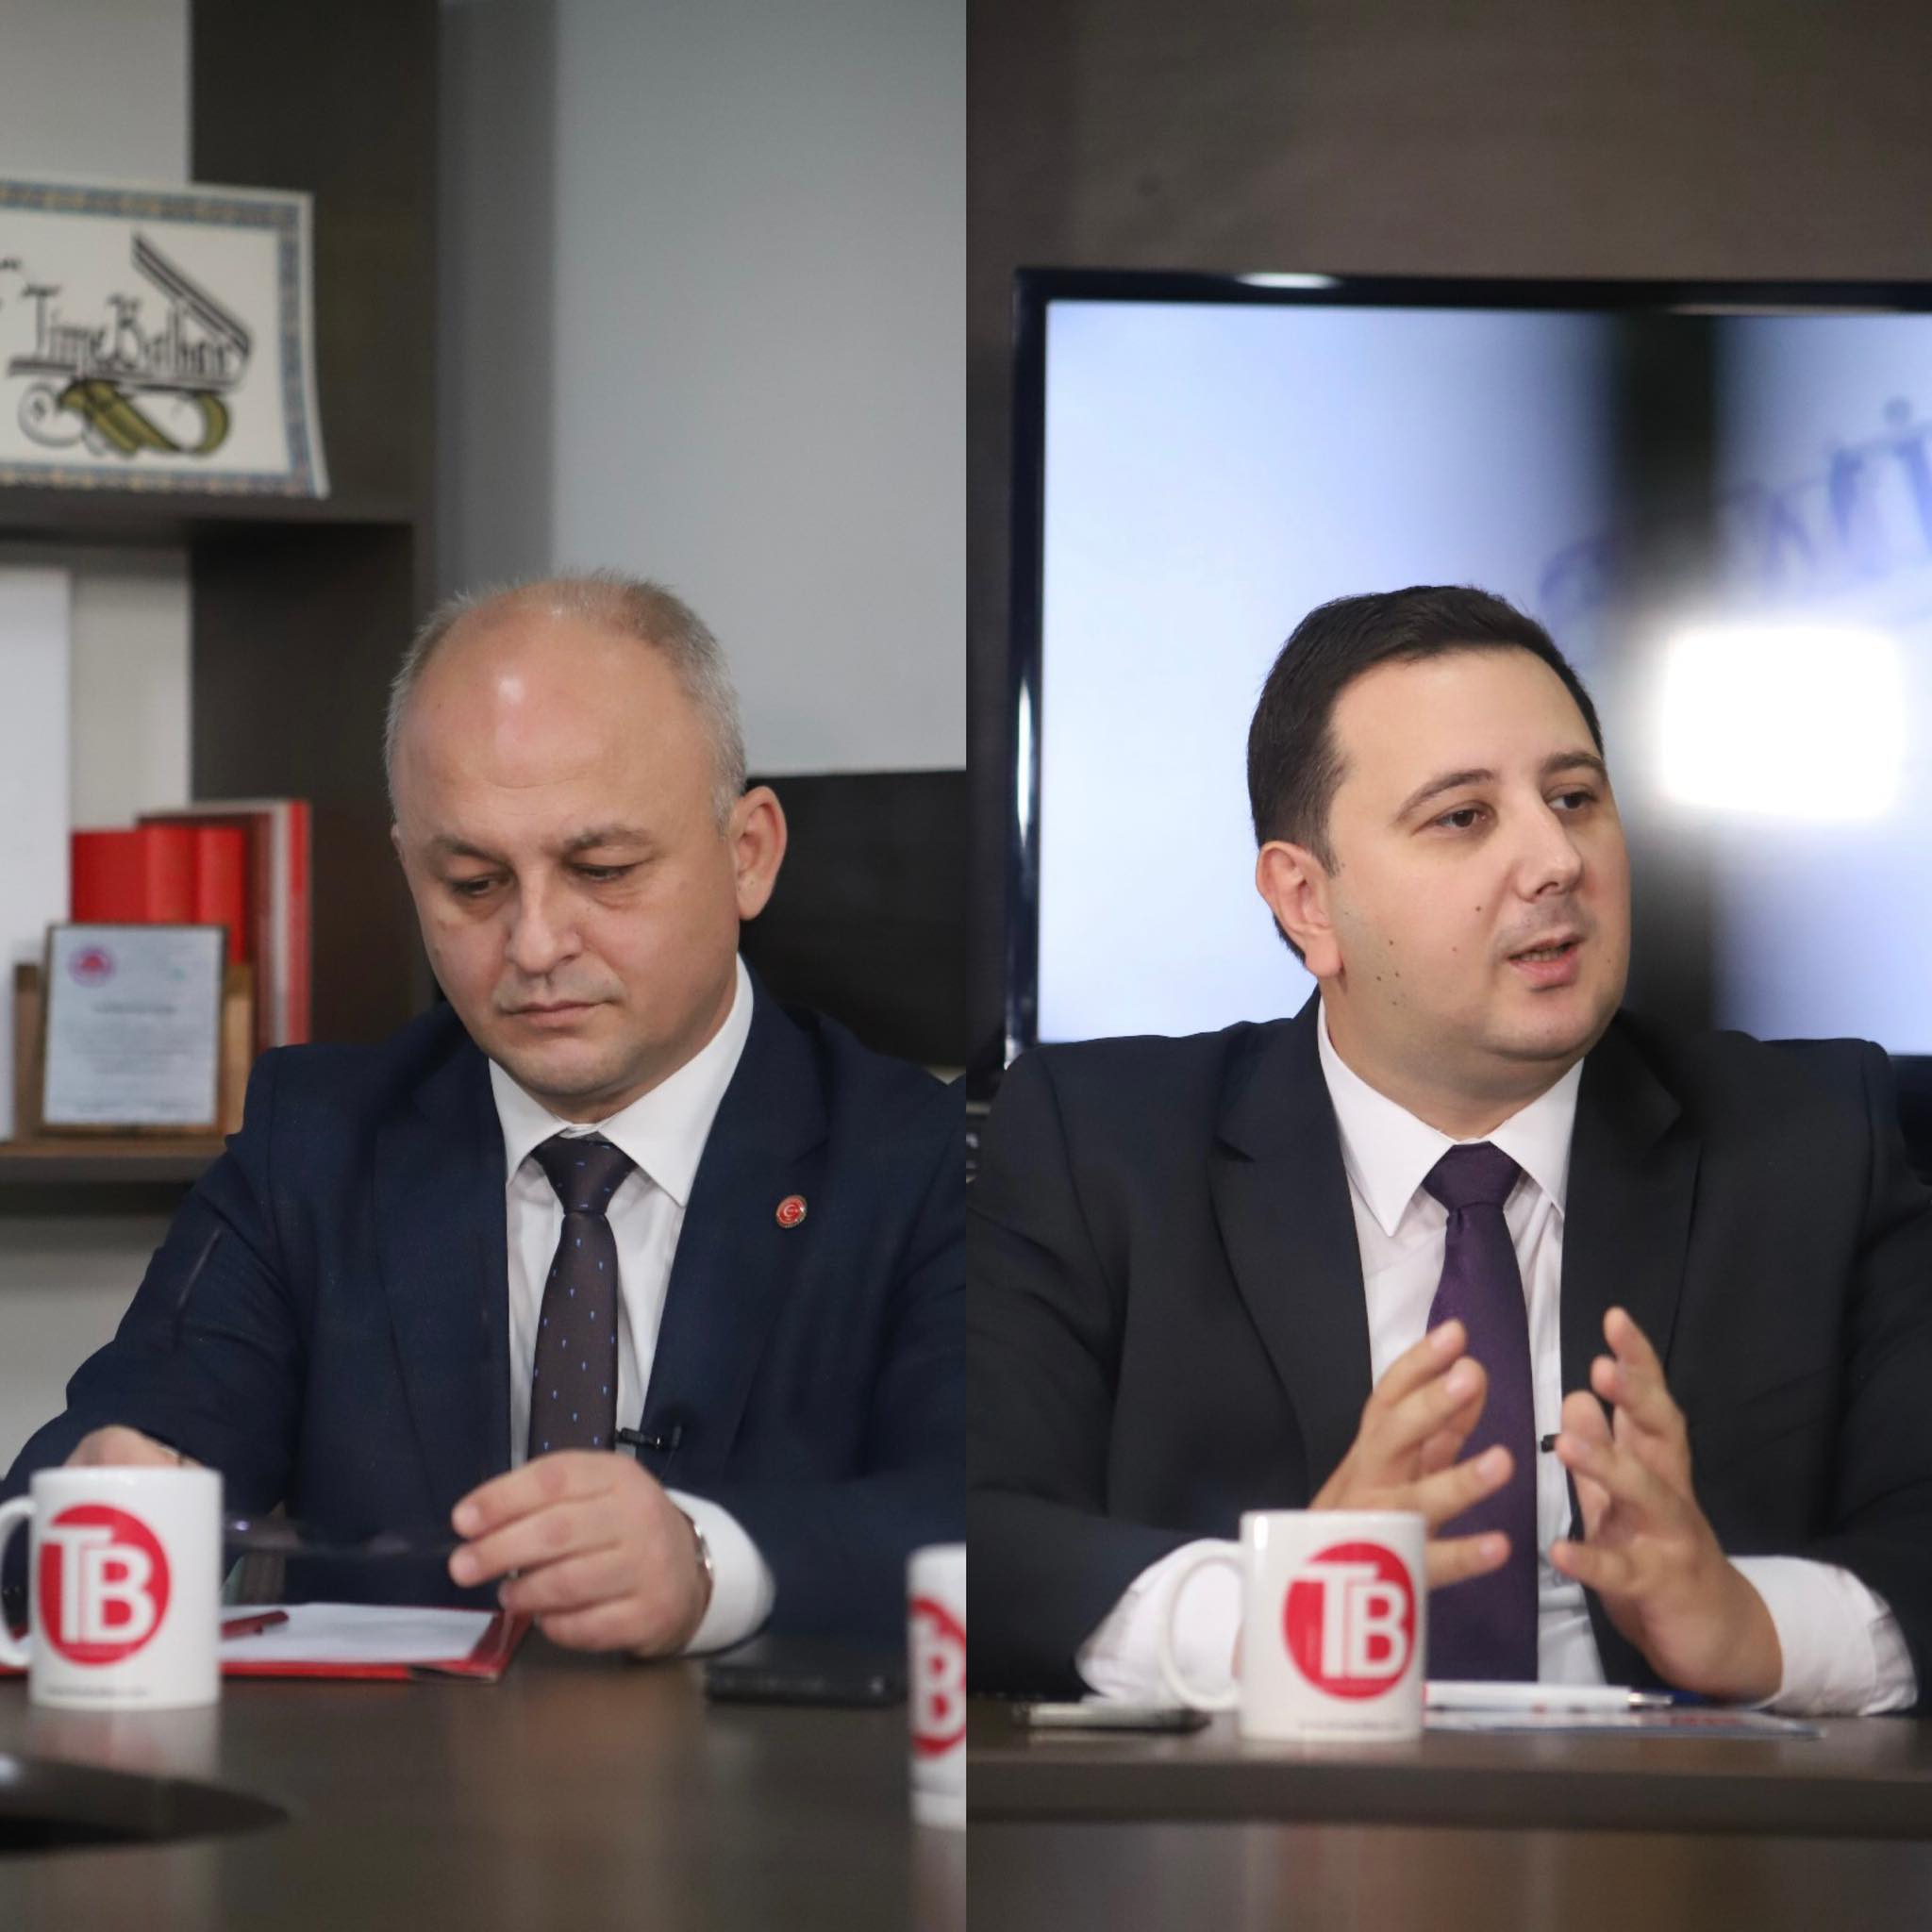 K. Makedonya’daki Türk milletvekilleri güven oylaması ile ilgili konuştu